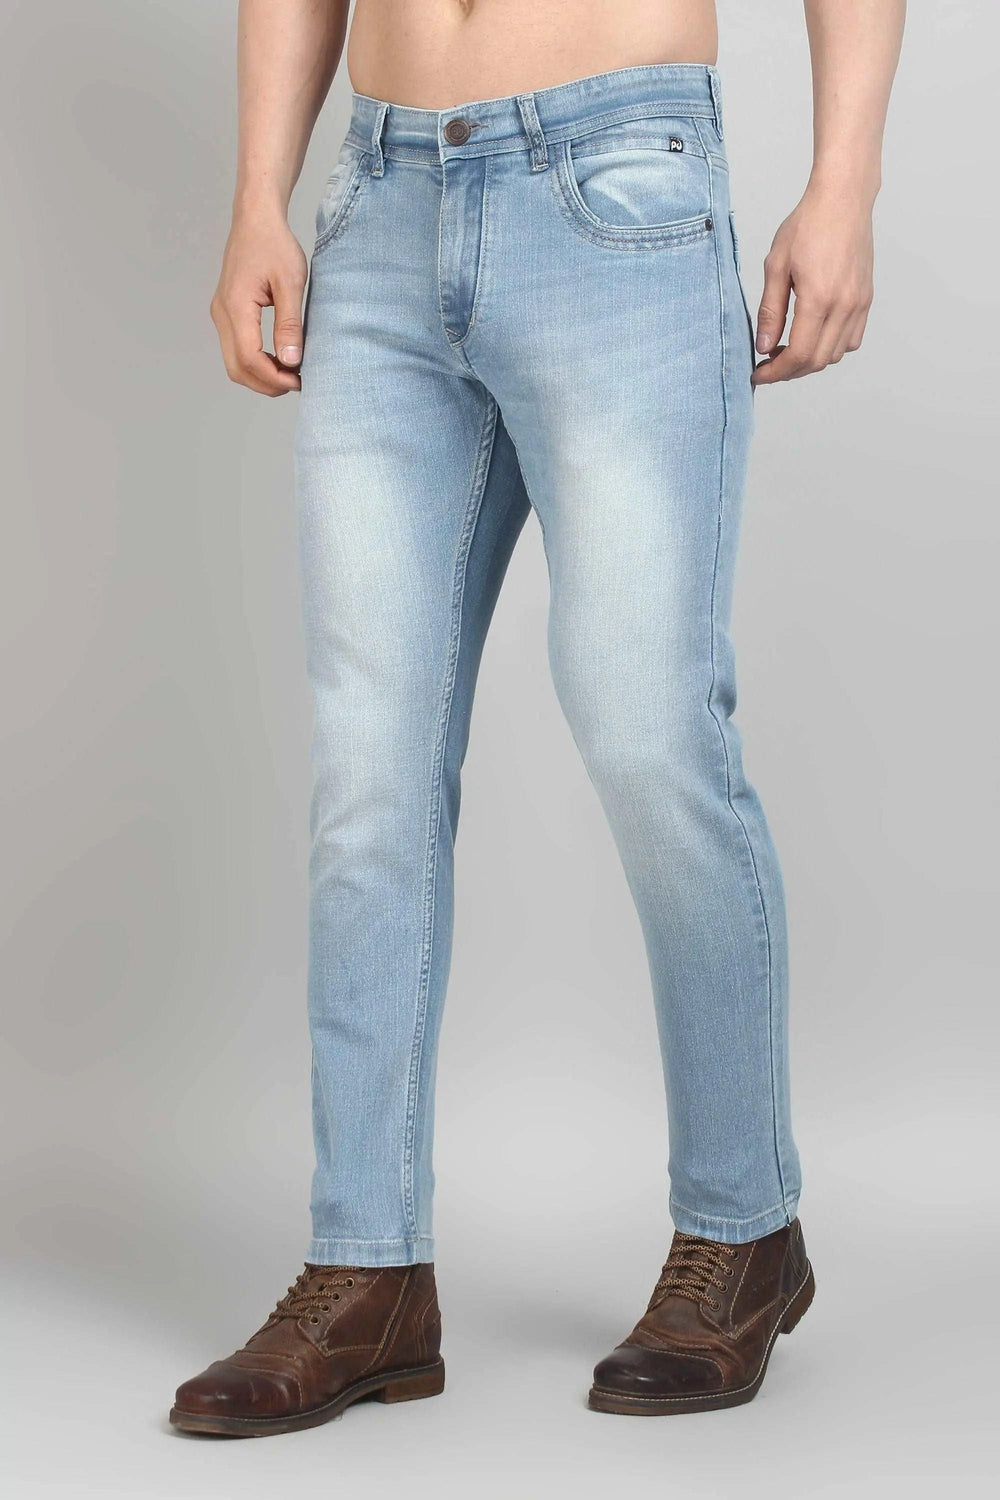 Ankle Fit Shine Blue Men's Denim Jeans - Peplos Jeans 